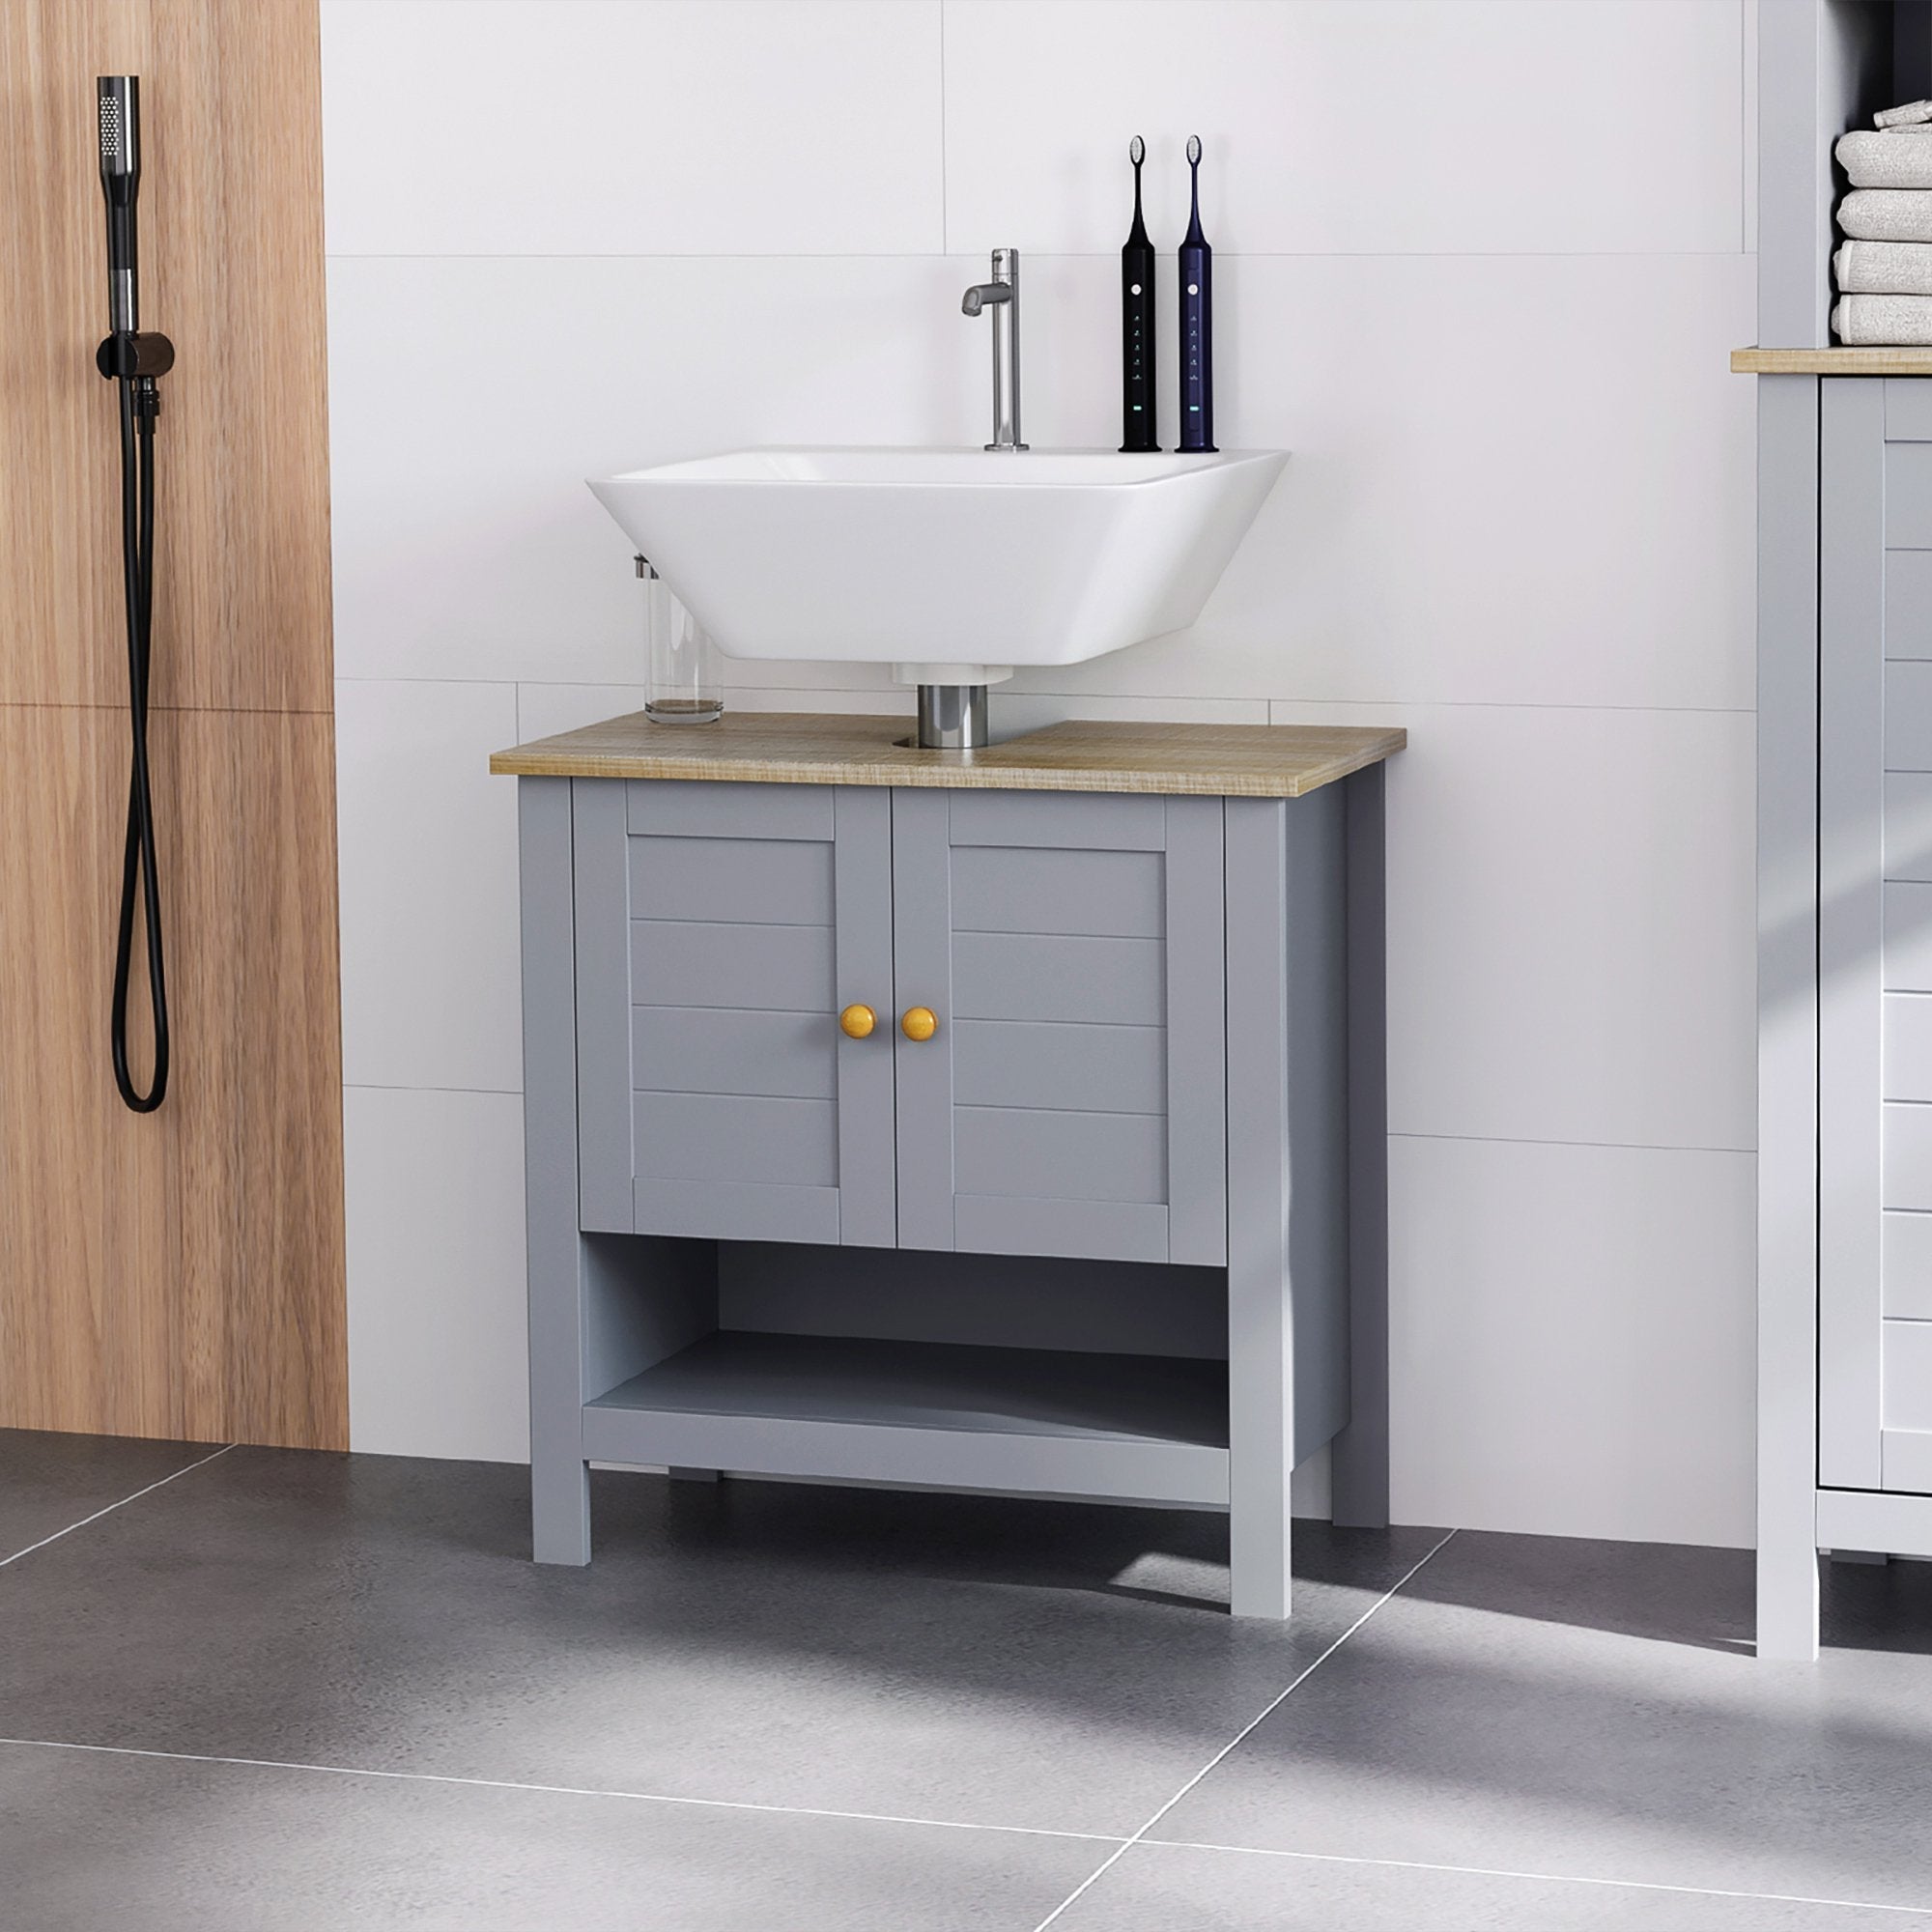 Bathroom Under Sink Cabinet Vanity Unit with Adjustable Shelf Space Saver 834-314V01 - Inspirely